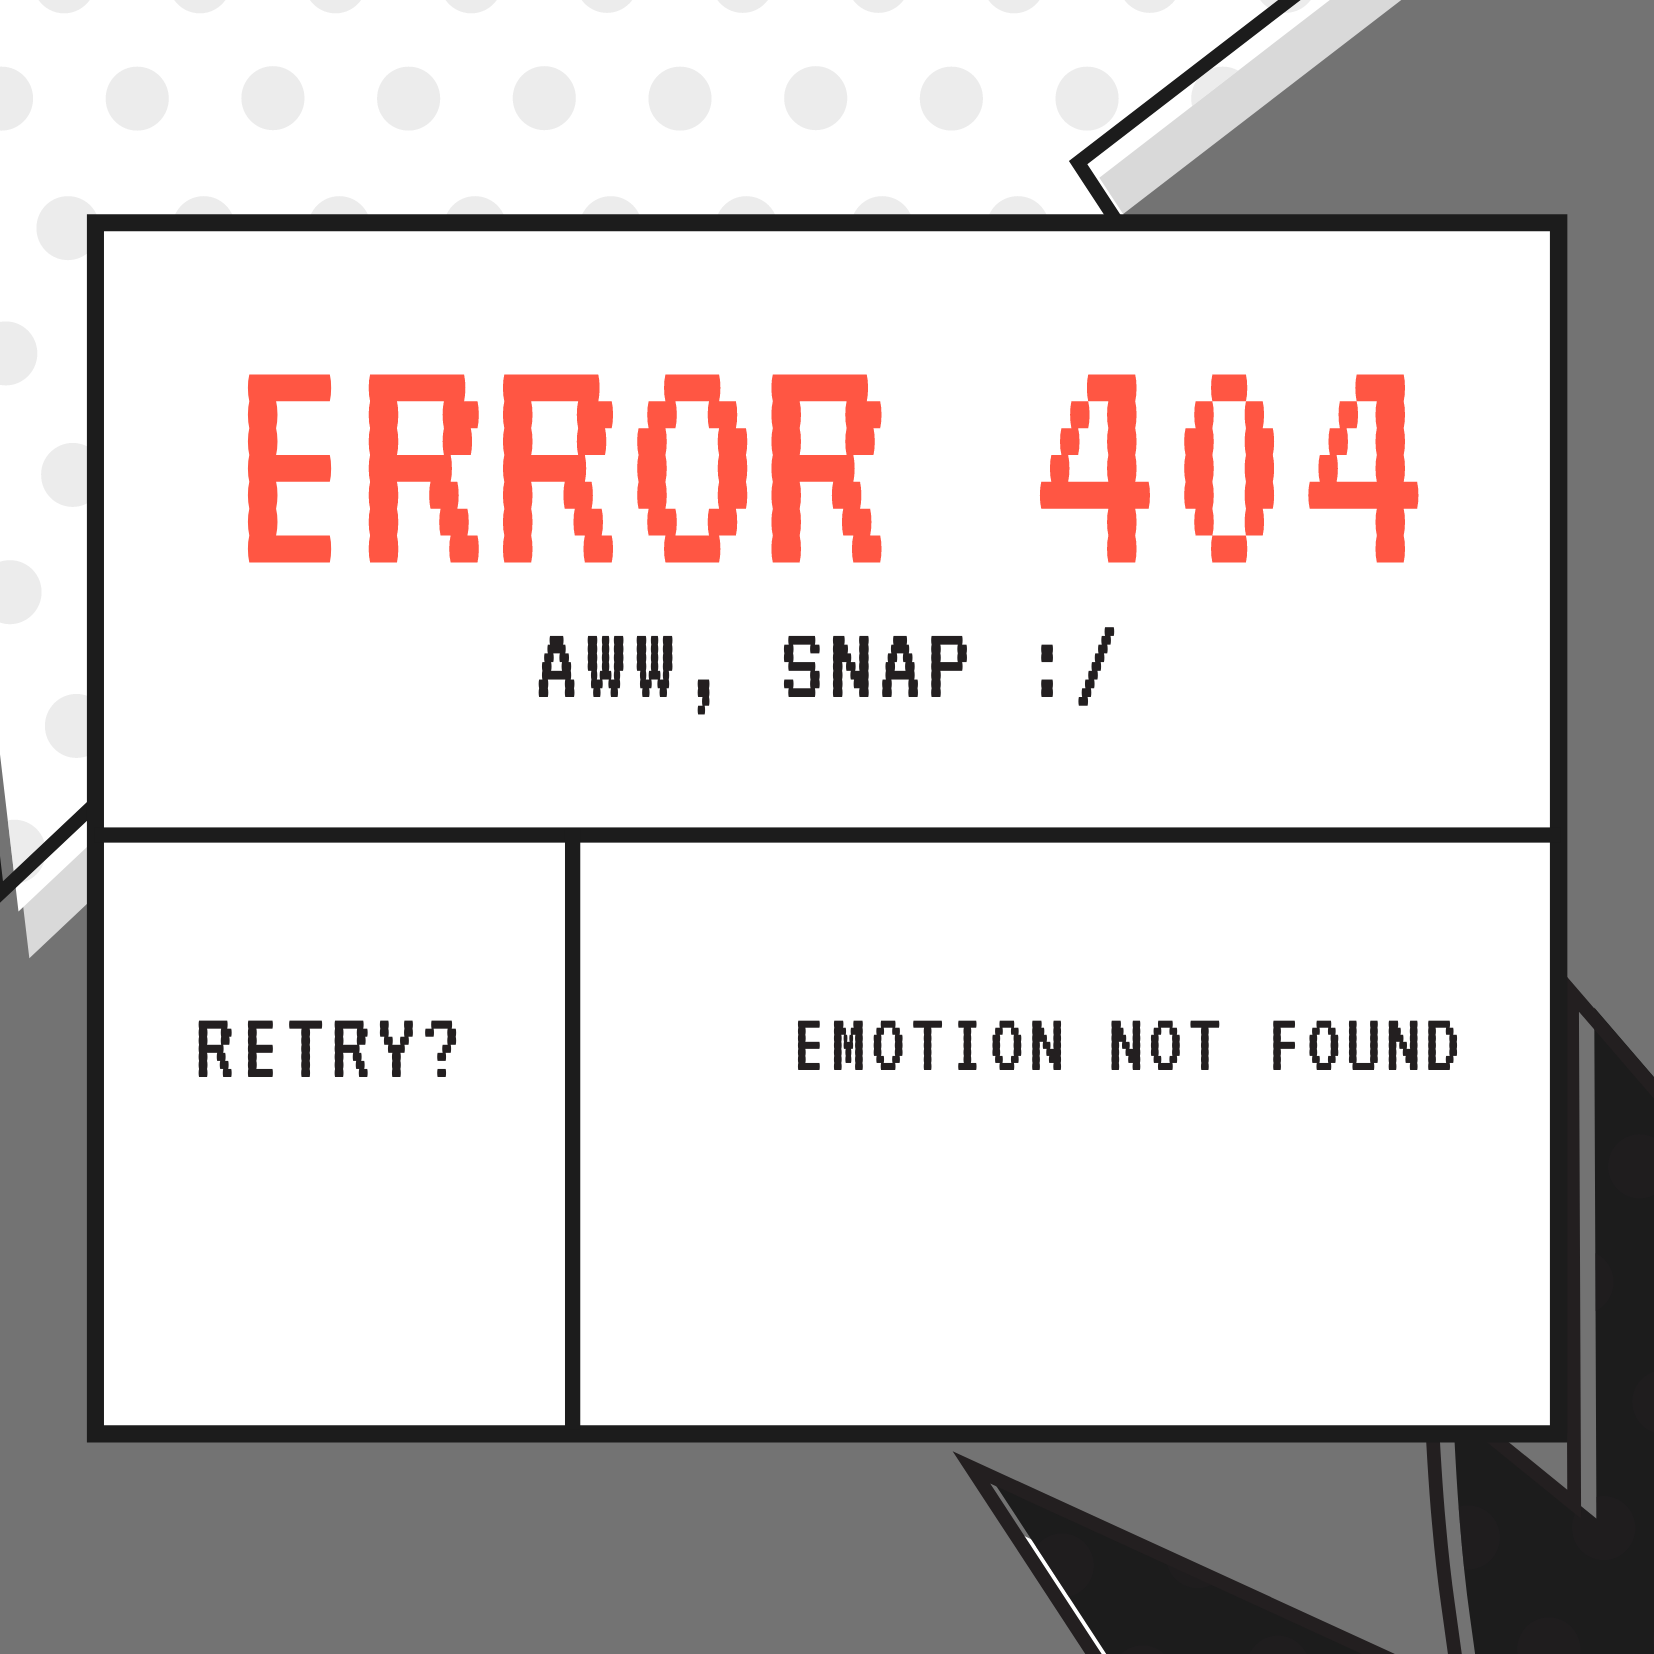 ERROR 404: EMOTION NOT FOUND